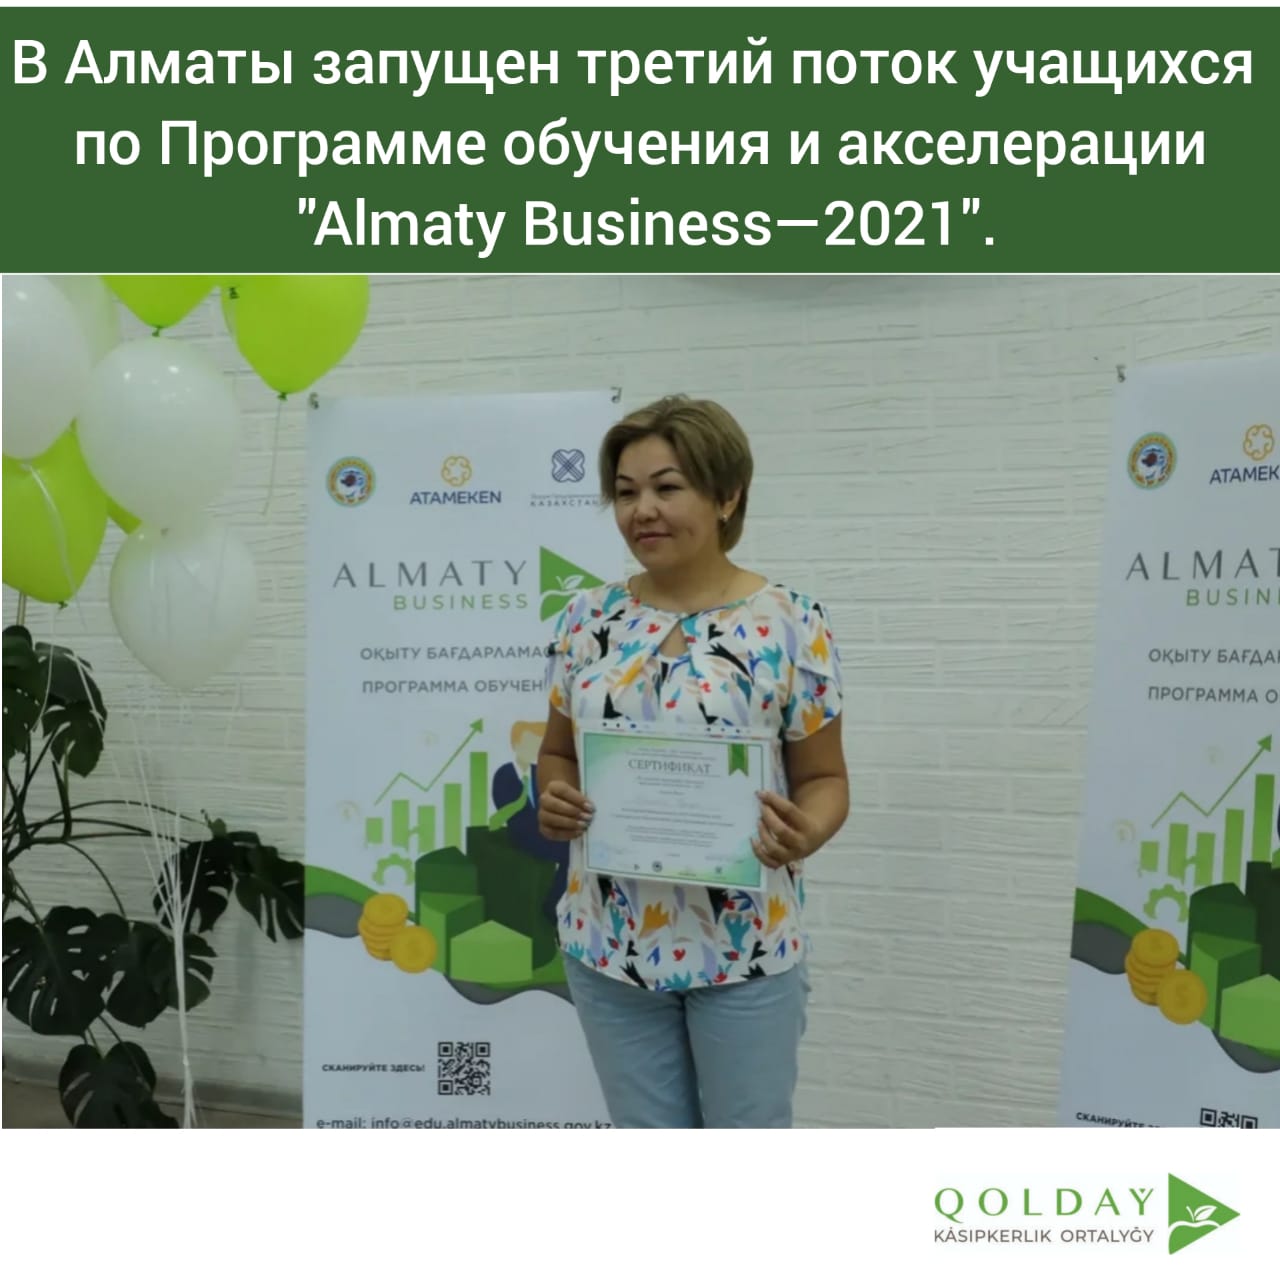 Алматыда «Almaty Business—2021» оқыту және акселерация бағдарламасы бойынша оқушылардың үшінші ағымы іске қосылды.